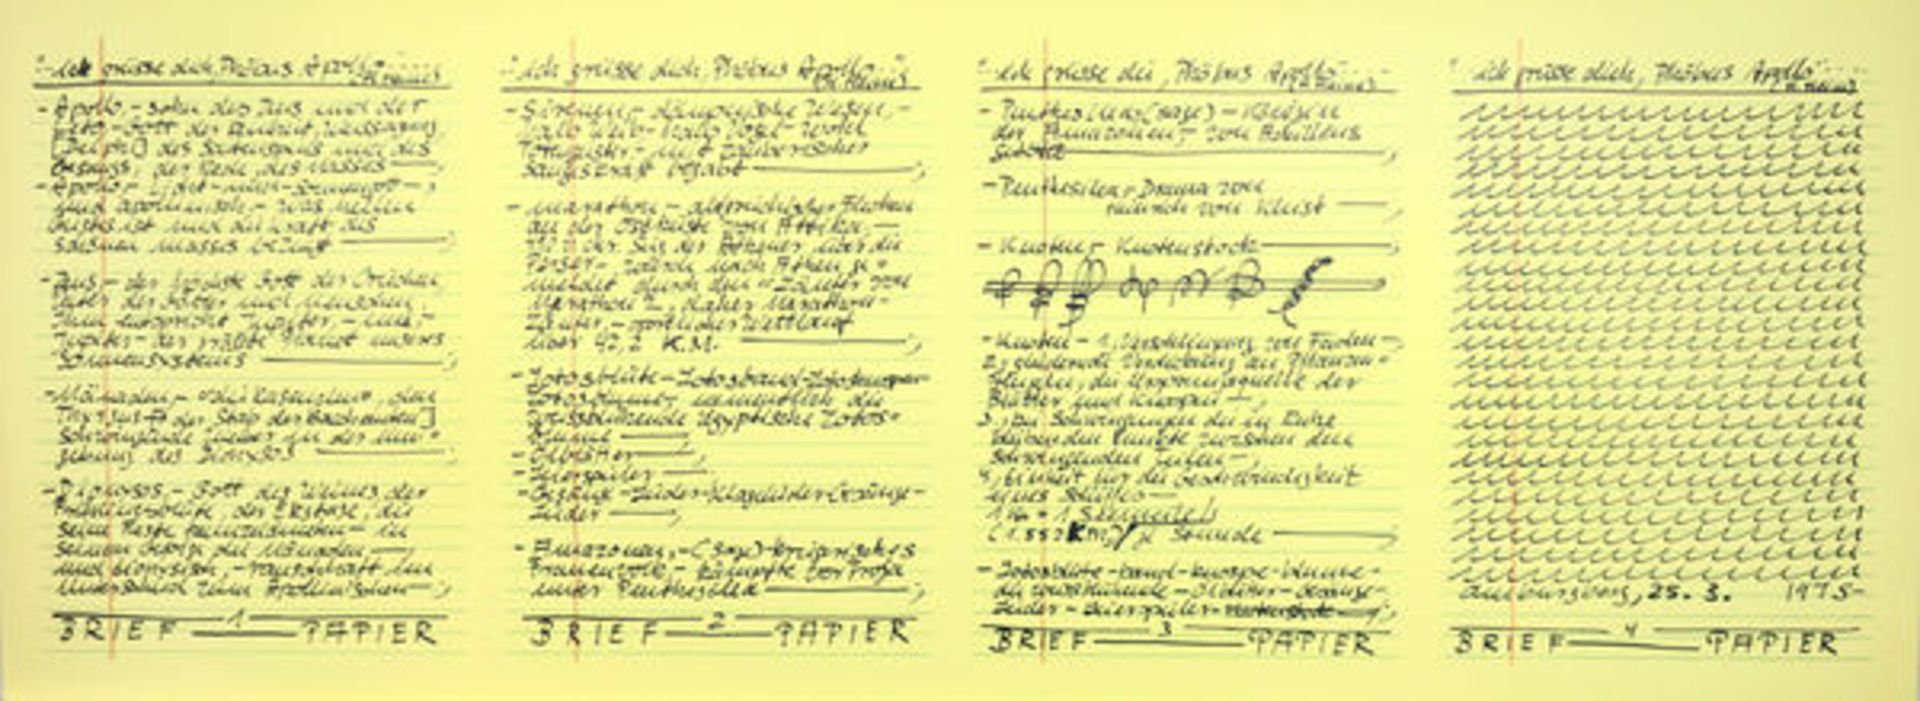 Darboven, Hanne 3 Blatt Offsetdrucke auf gelbem Papier Aufzeichnungen 25.3. 1975 / Aufzeichnungen - Image 2 of 3